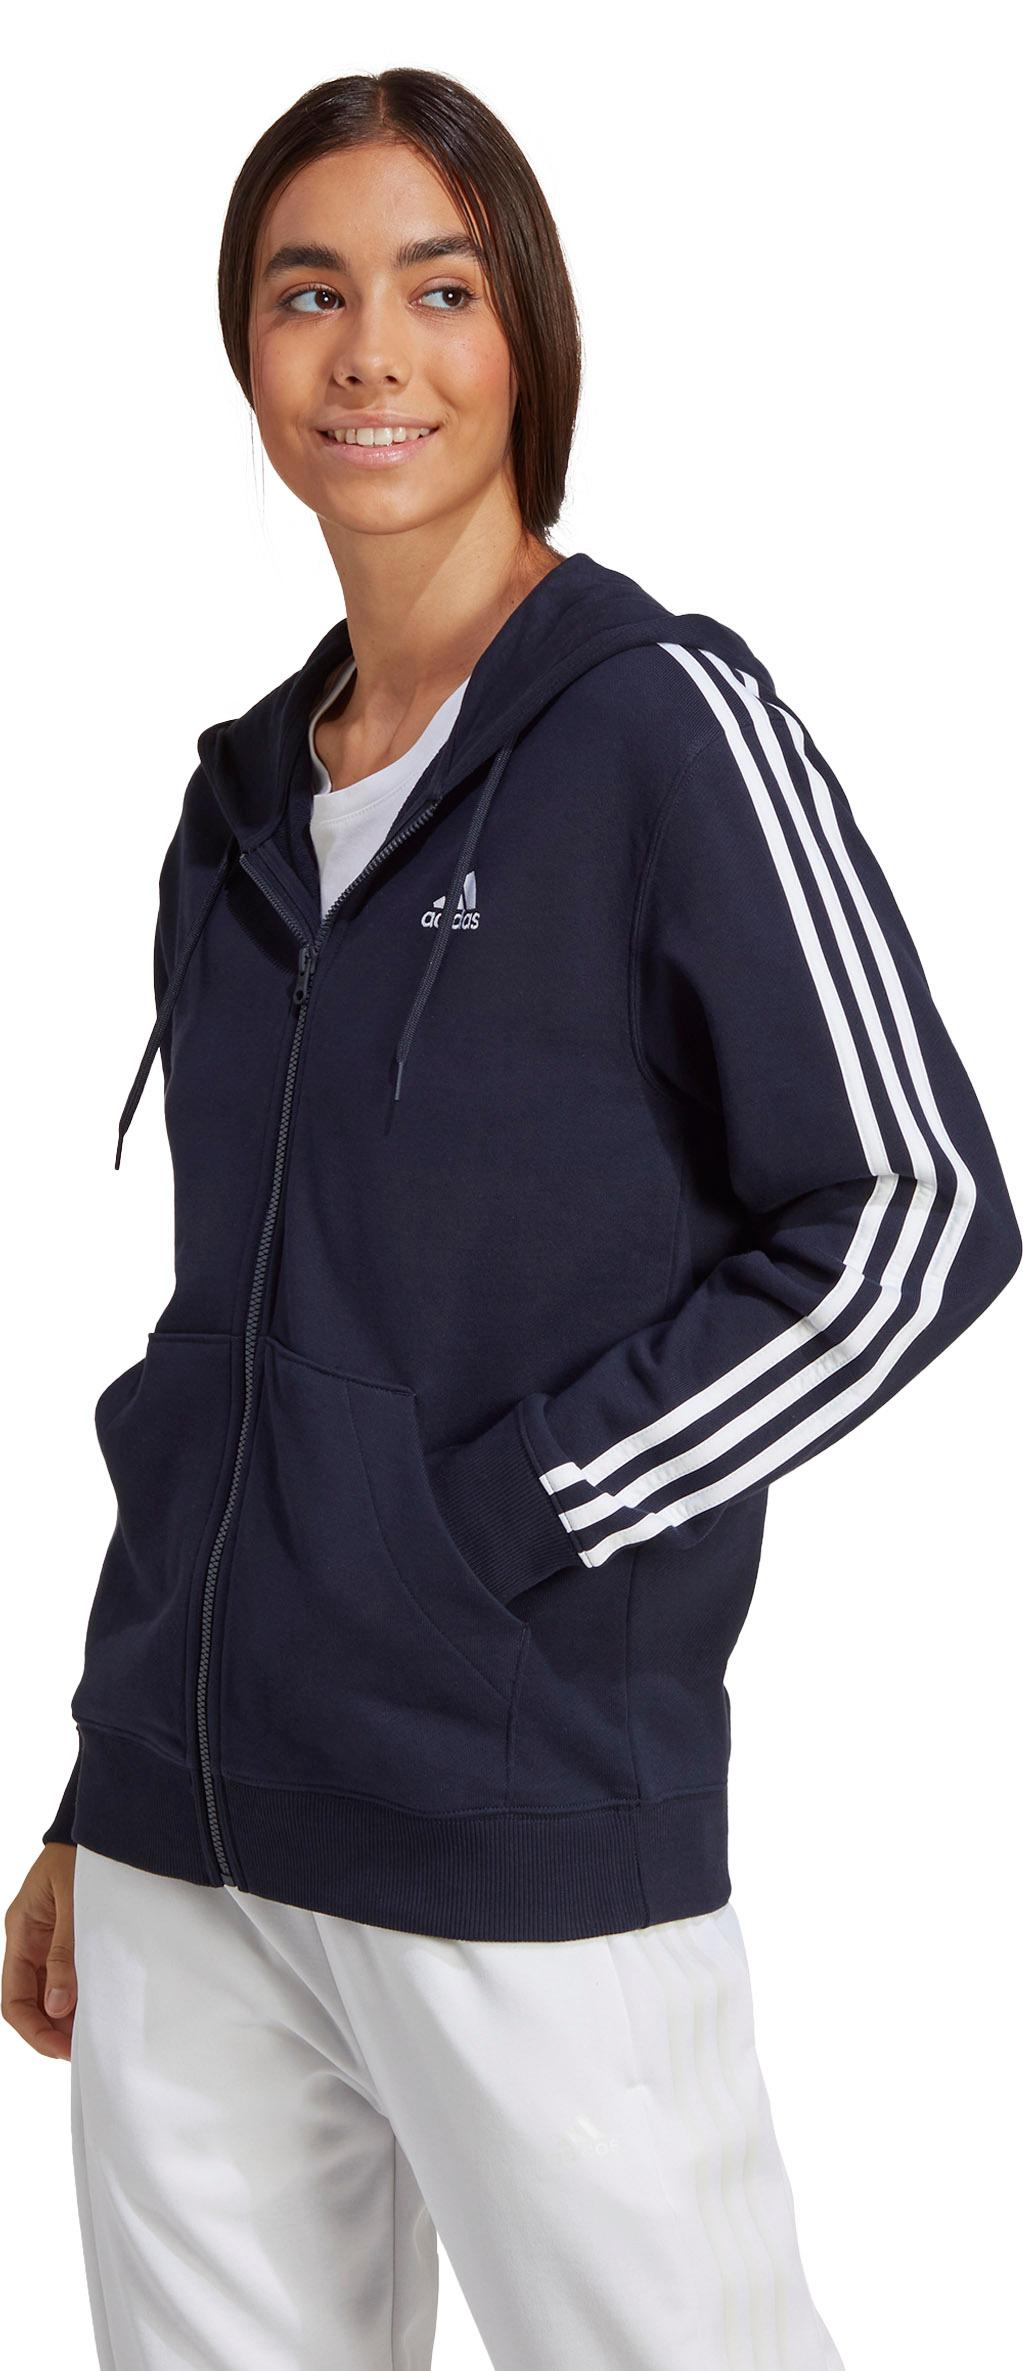 FRENCH Adidas Damen kaufen Shop von Online 3-STREIFEN SportScheck TERRY Kapuzenjacke ESSENTIALS im legink-white